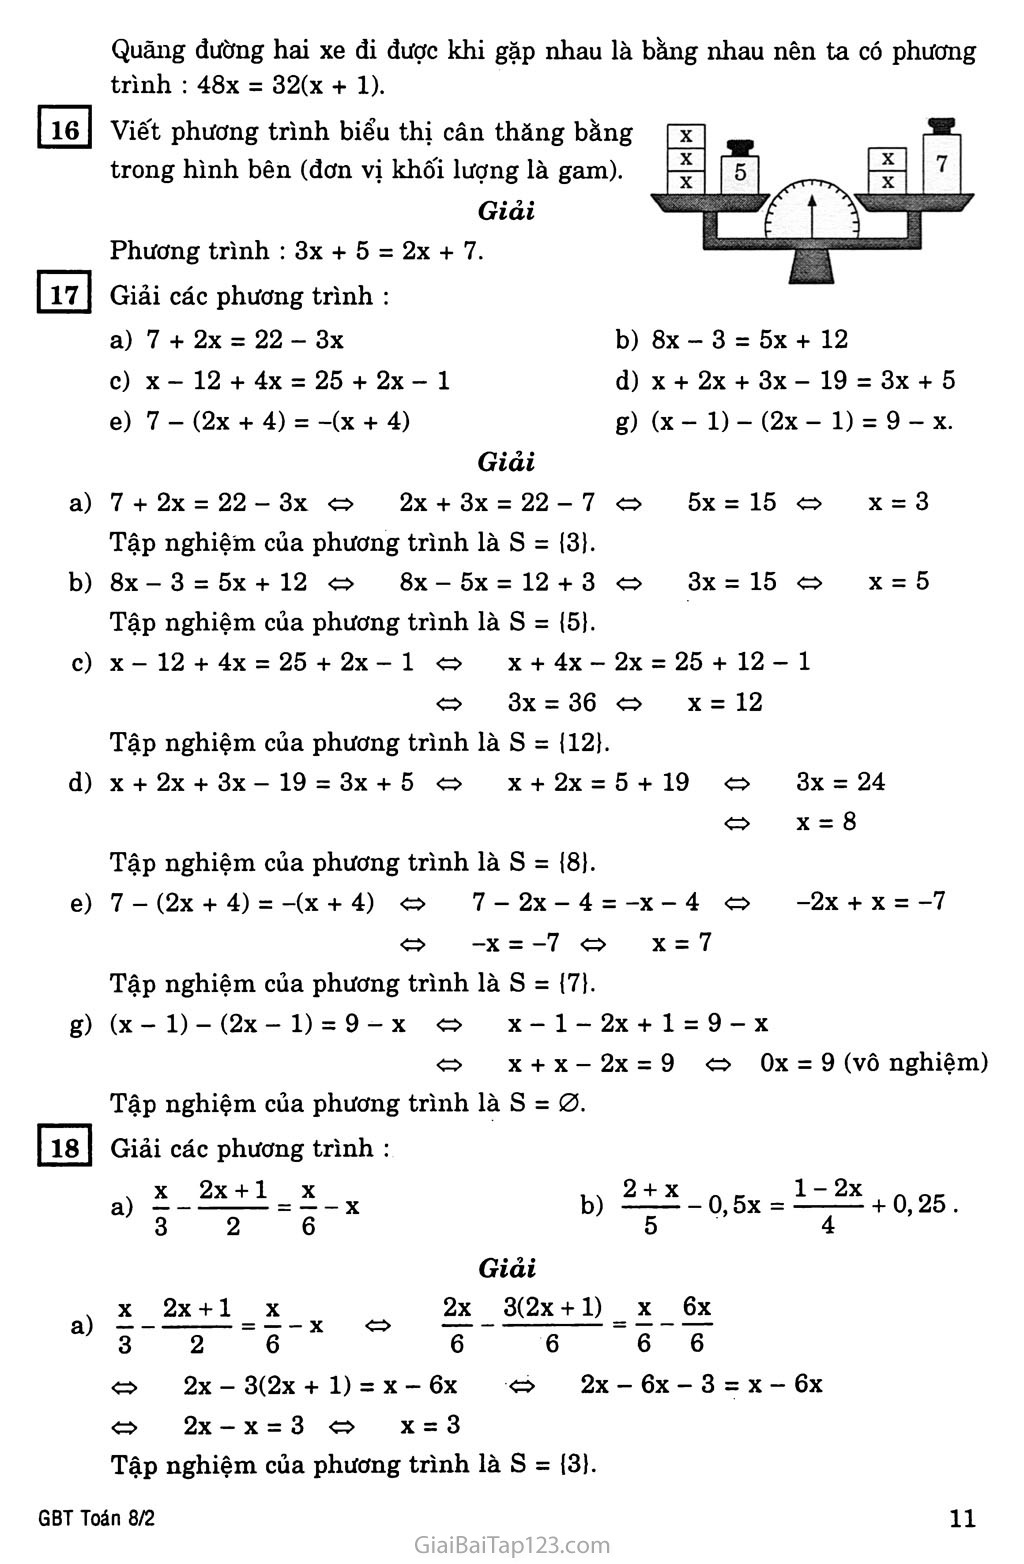 §3. Phương trình đưa được về dạng ax + b = 0 trang 5